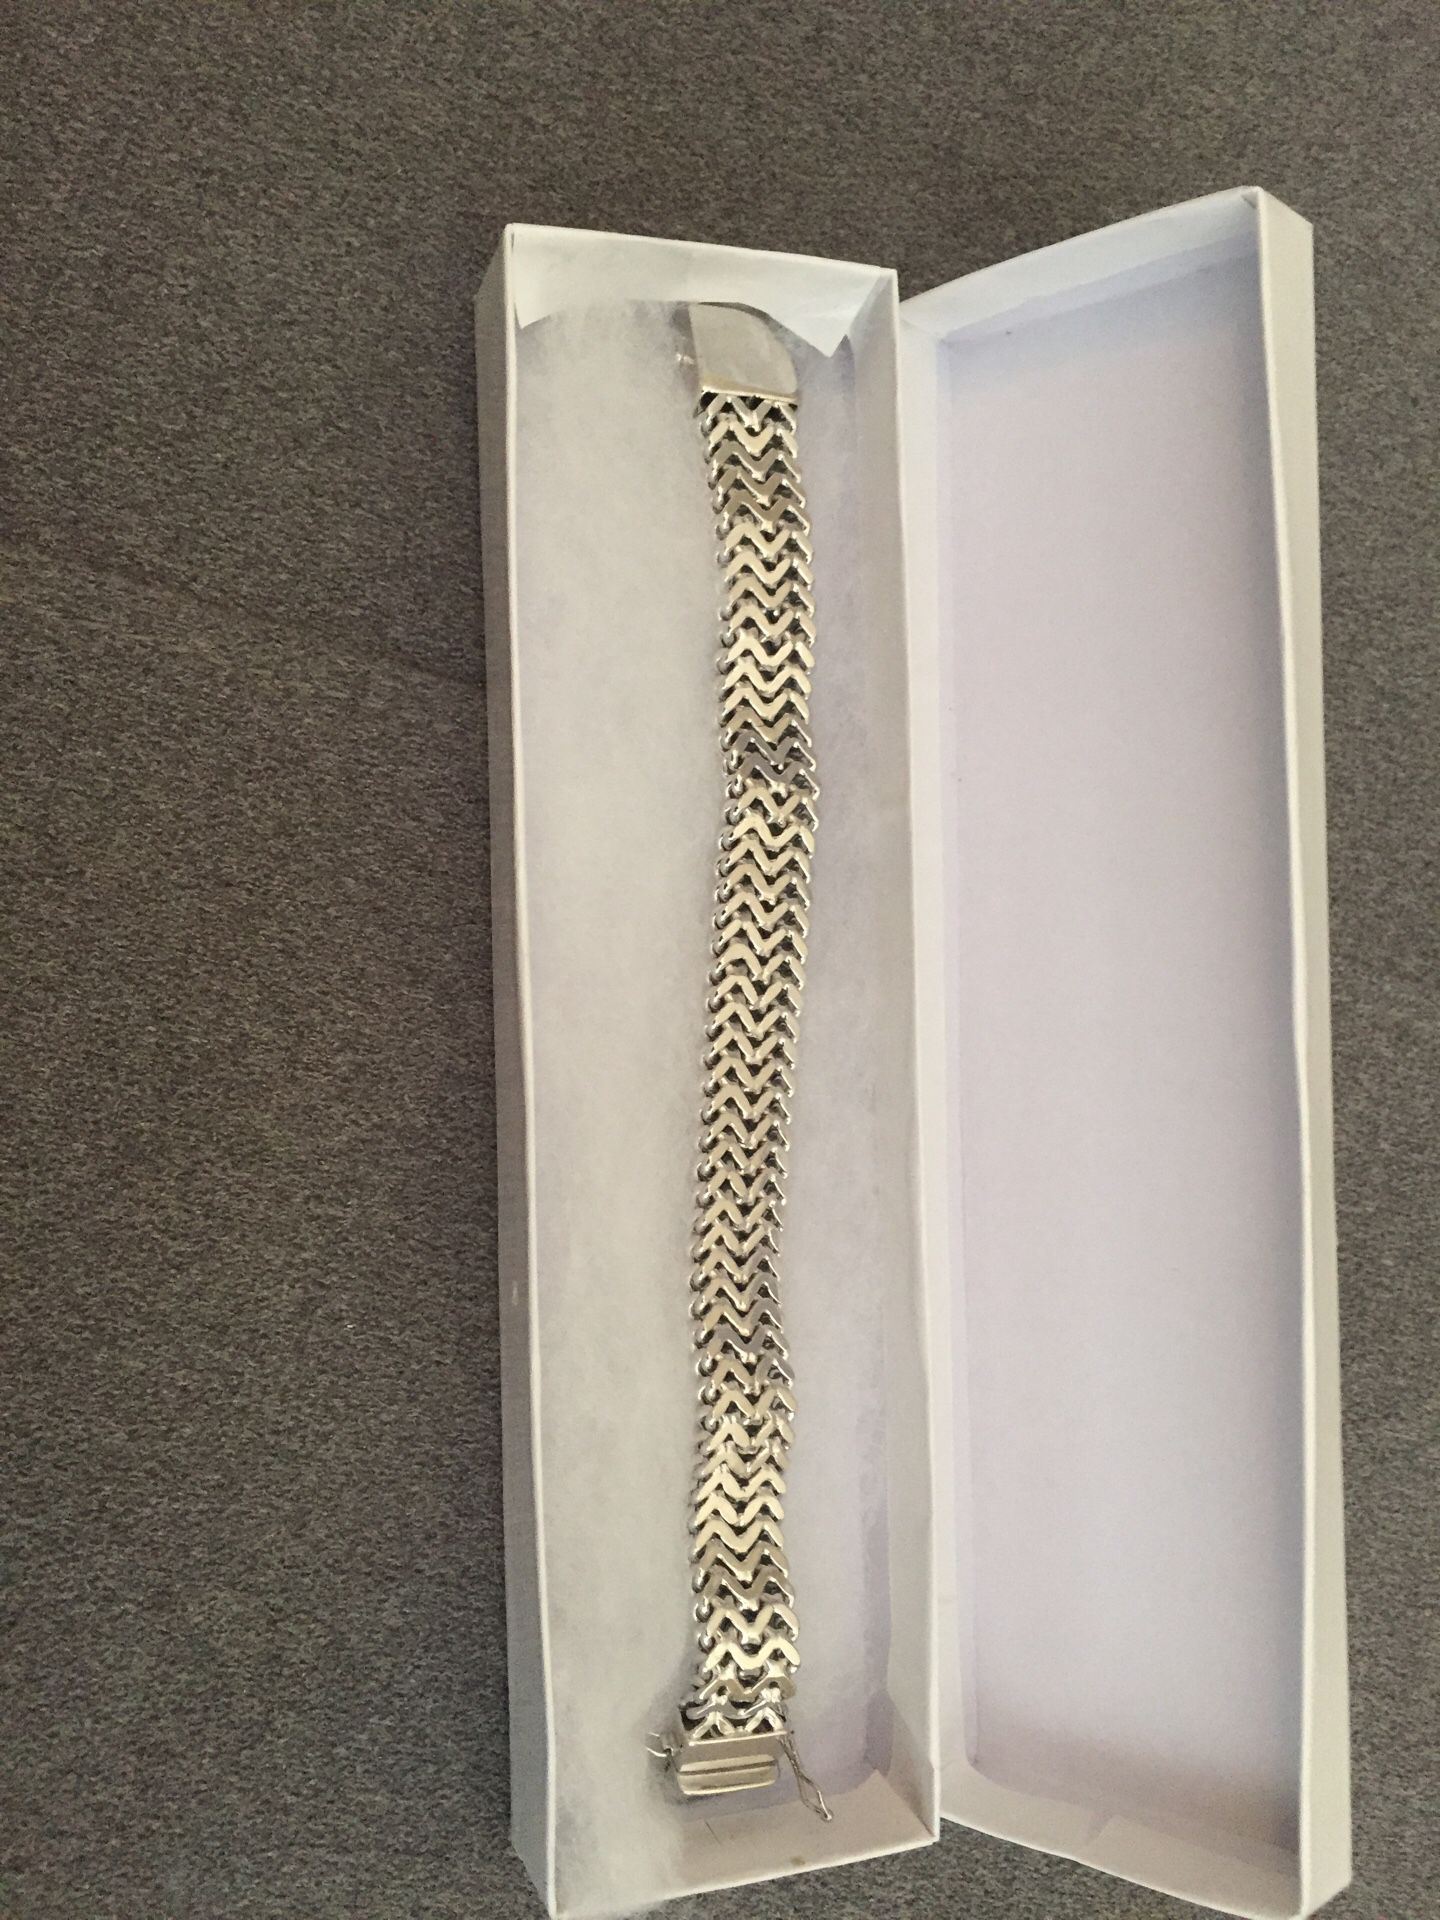 Beautiful men’s 925 silver bracelet new in box